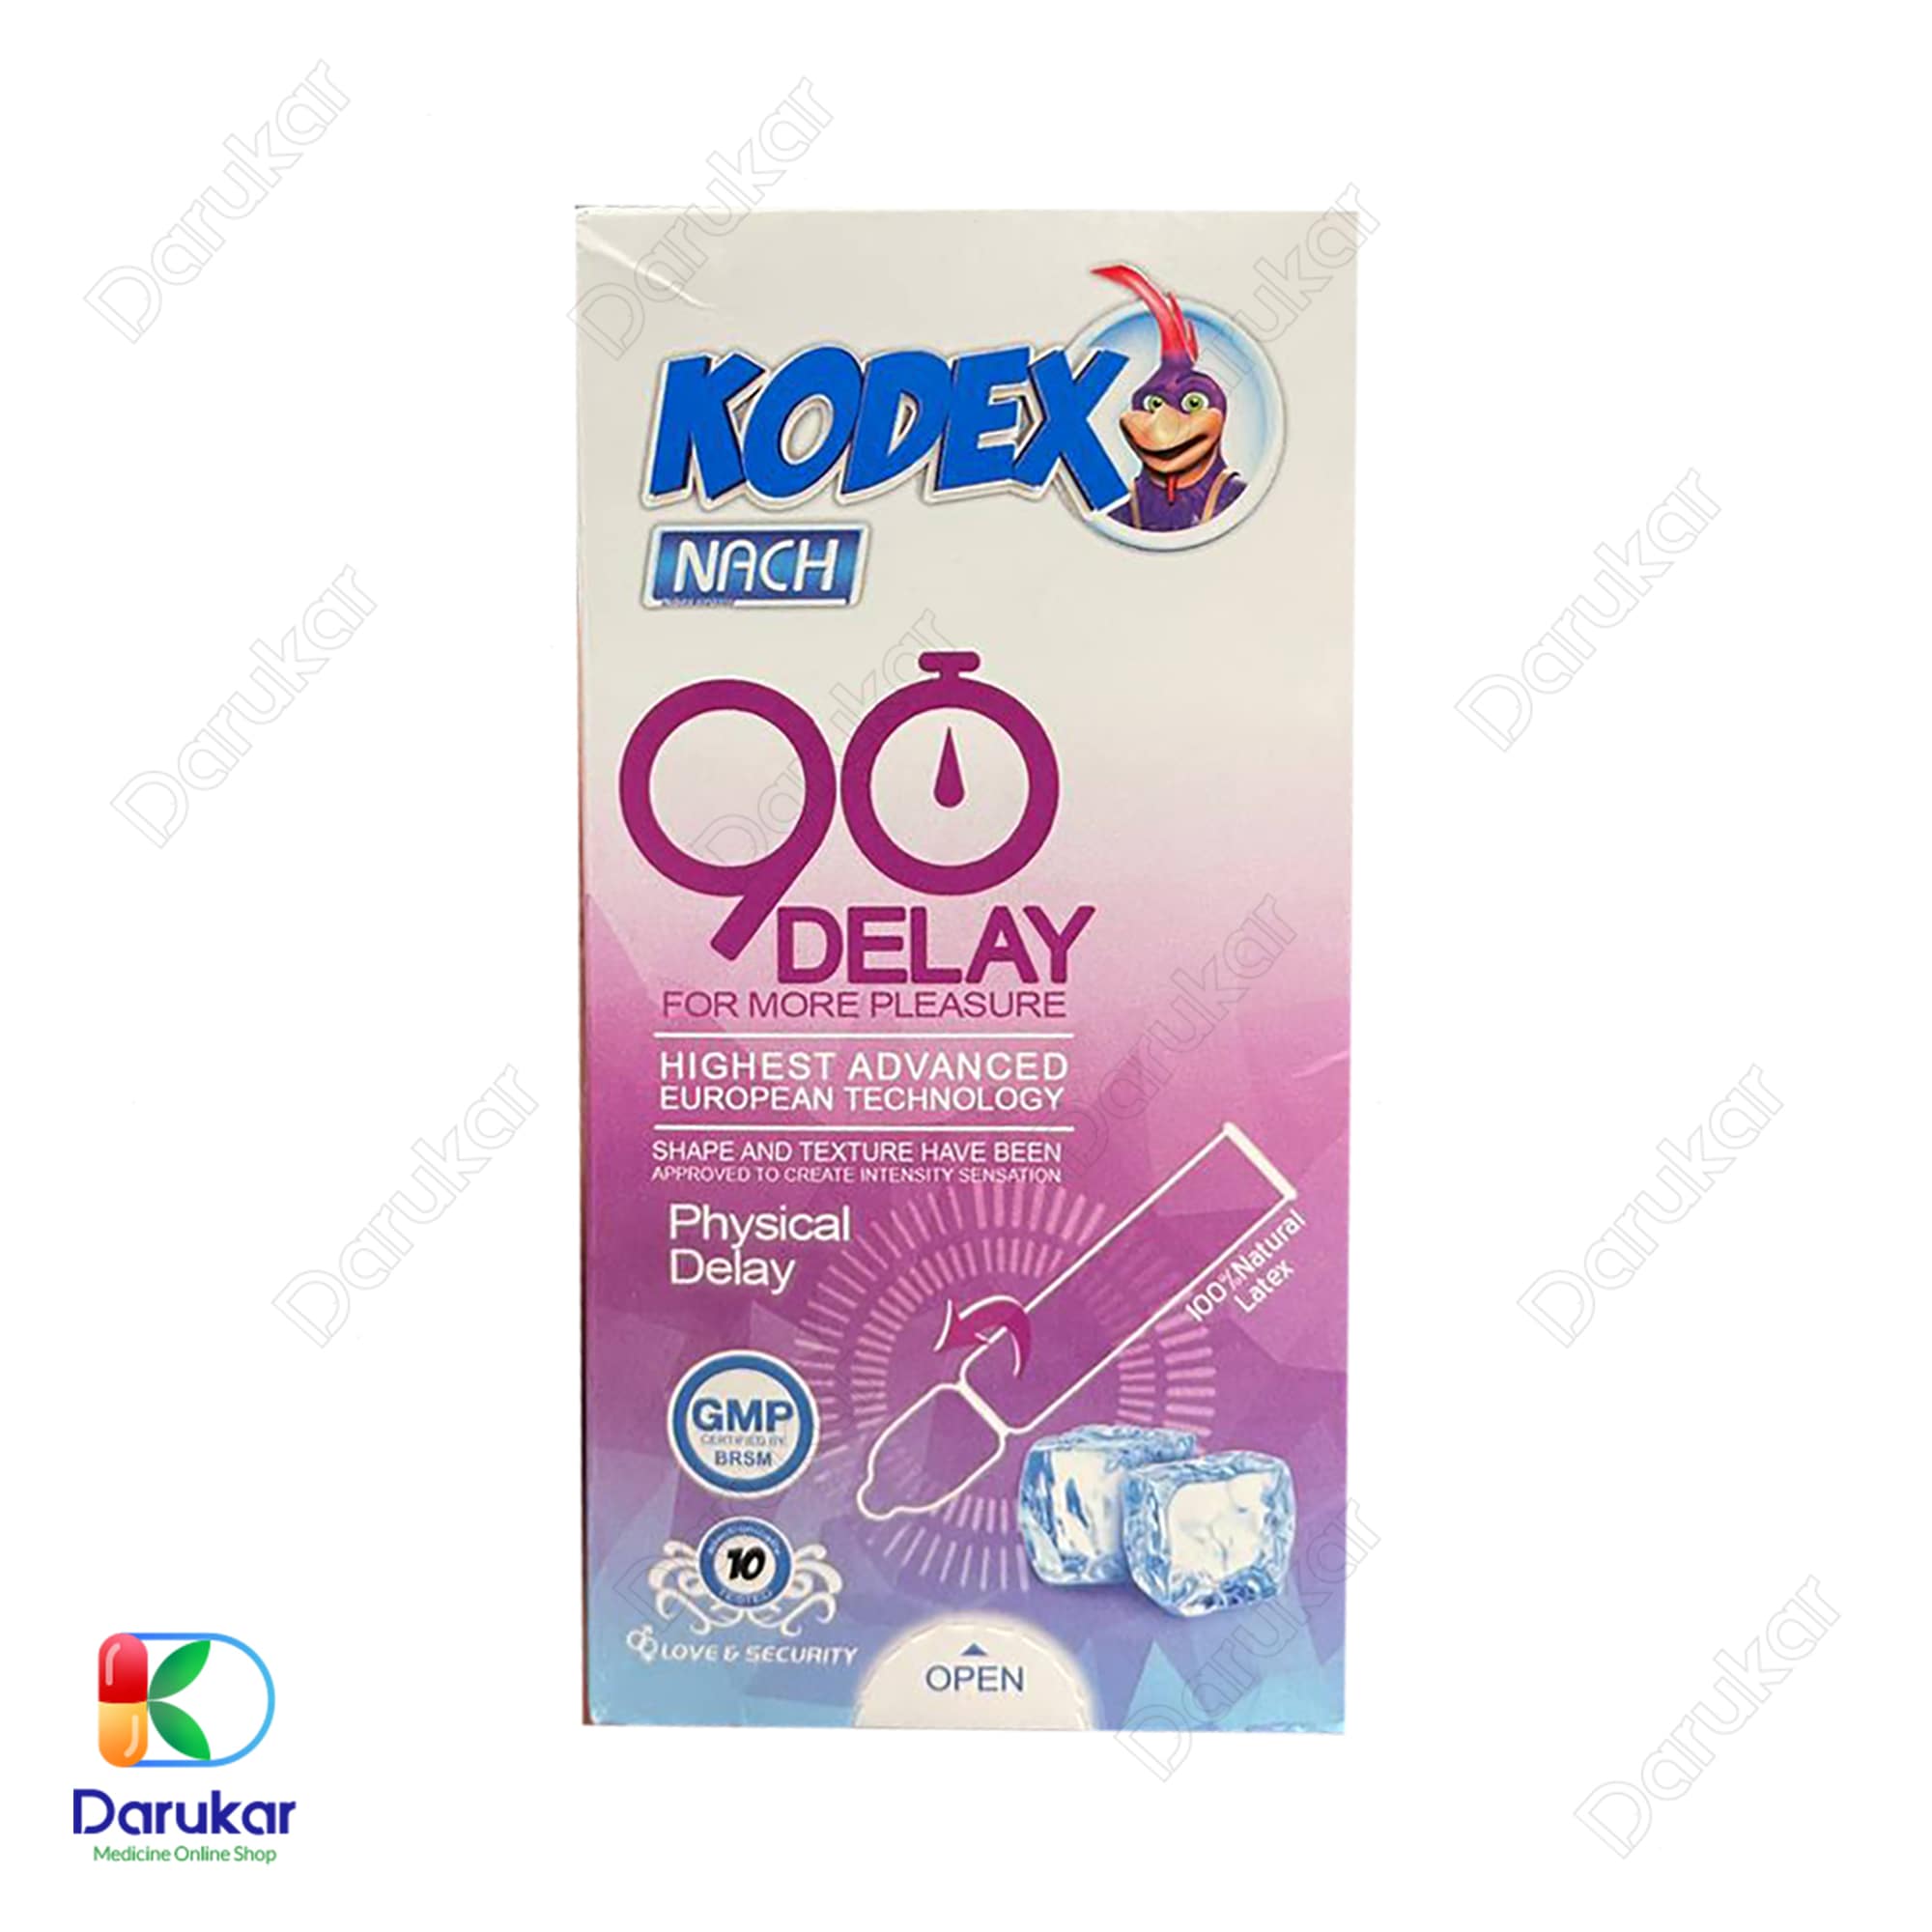 Kodex 90 Delay Condoms 10 Pcs 2